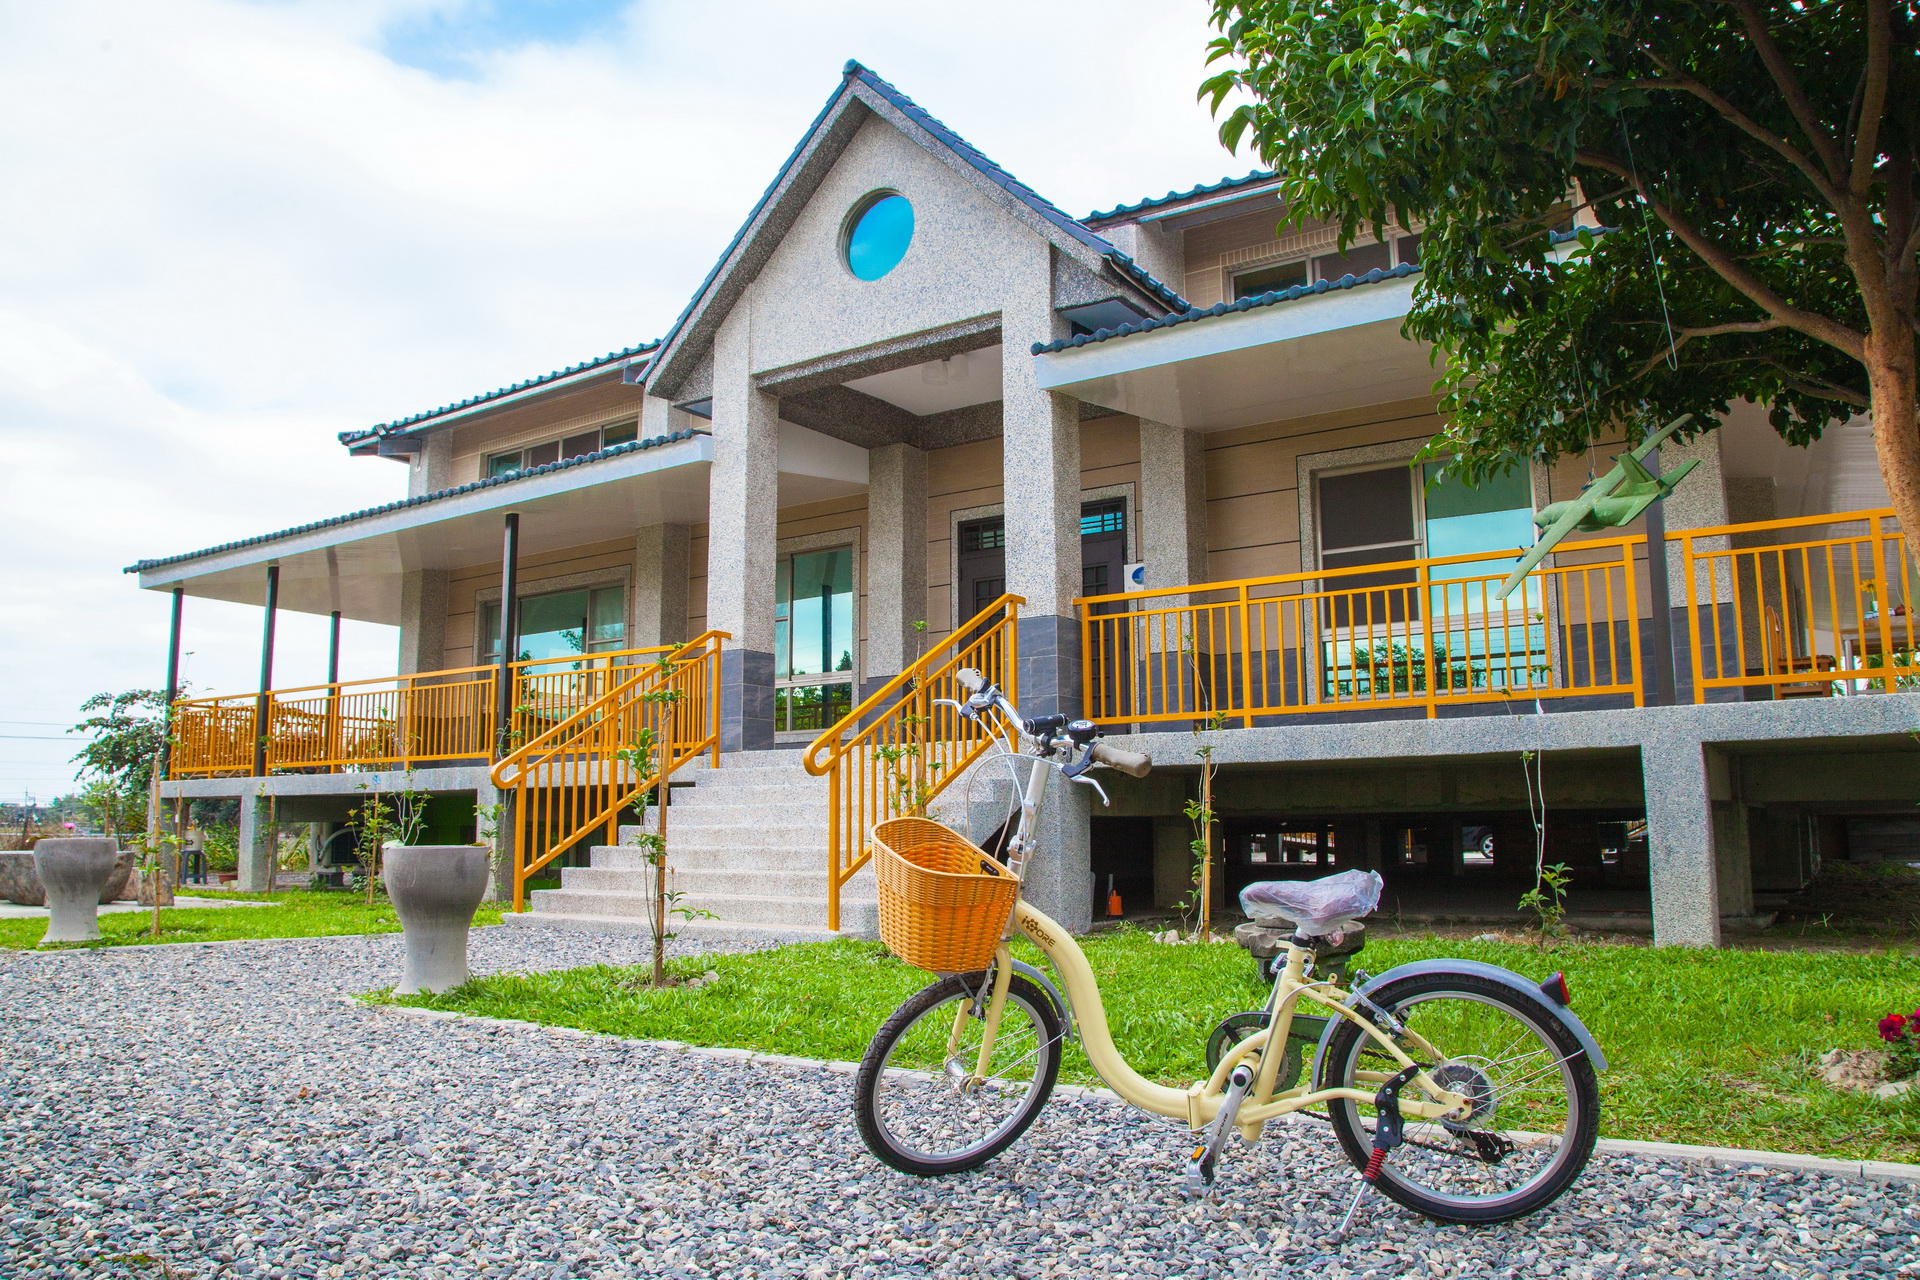 騎著自行車去逛逛吧！「屏東的家」亦提供自行車，閒暇之餘可至單車國道悠活運動喔！